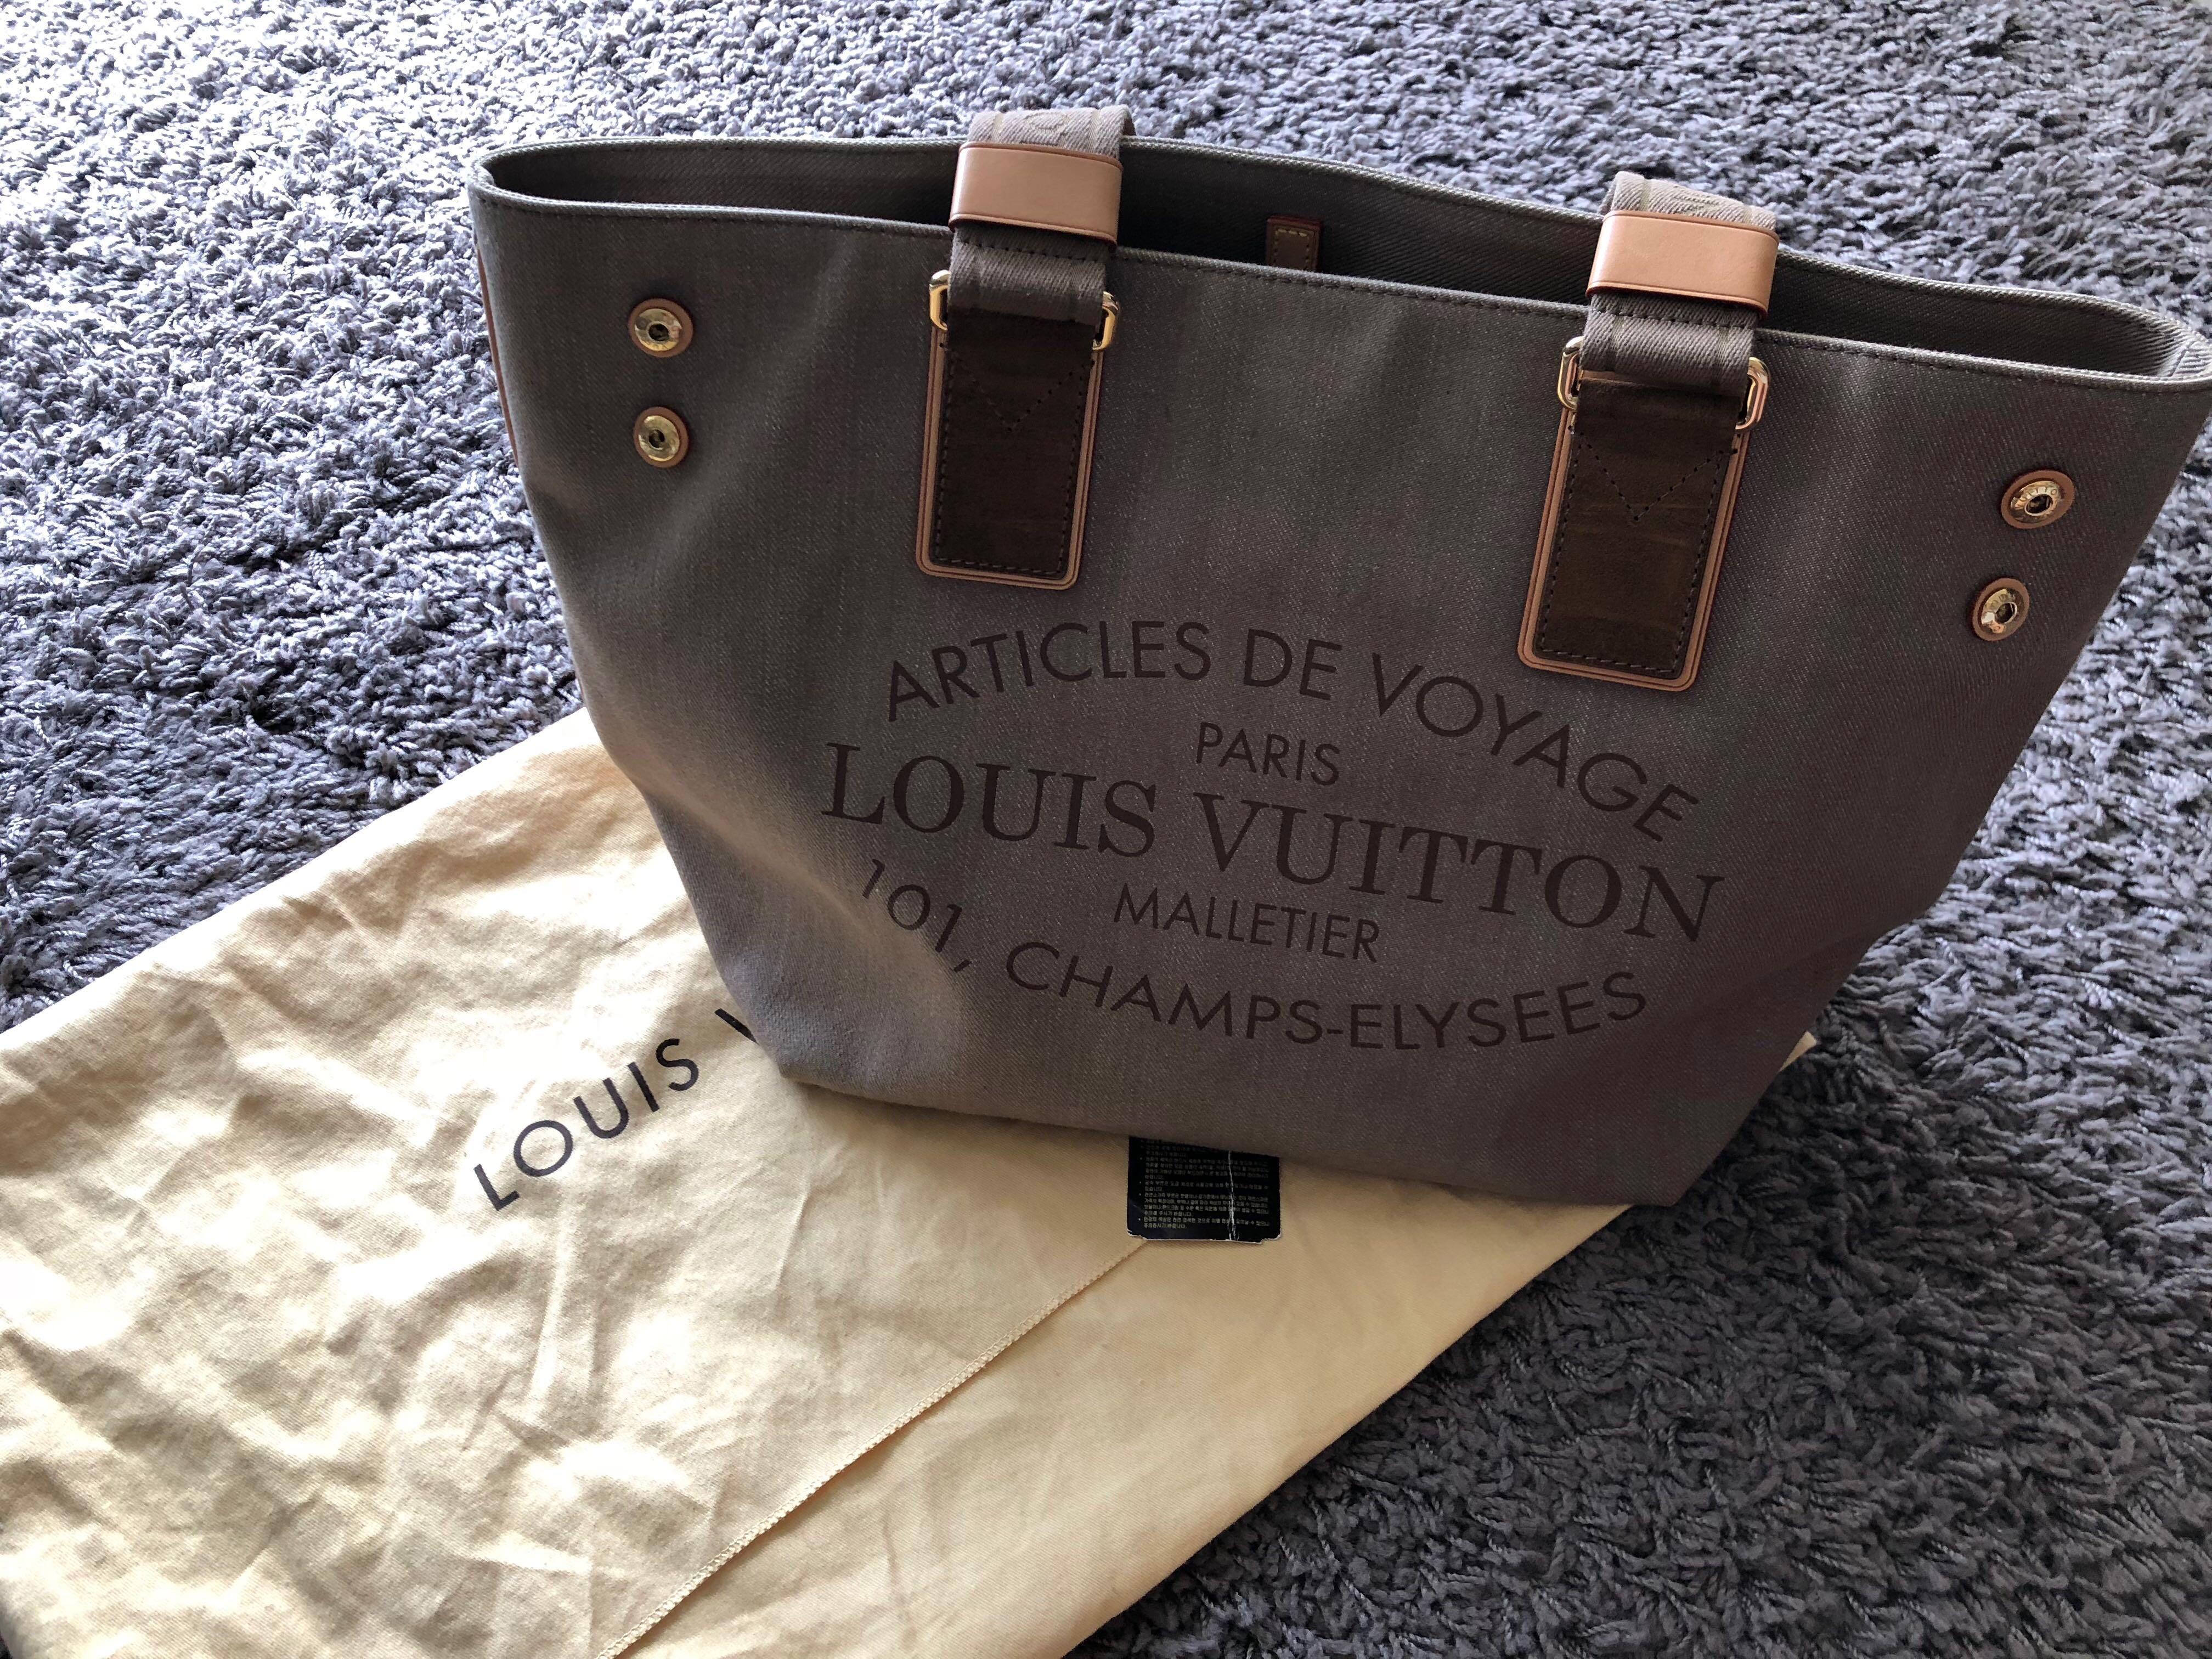 Charitybuzz: Louis Vuitton Articles of Voyage 101 Champs Elysse Paris Bag